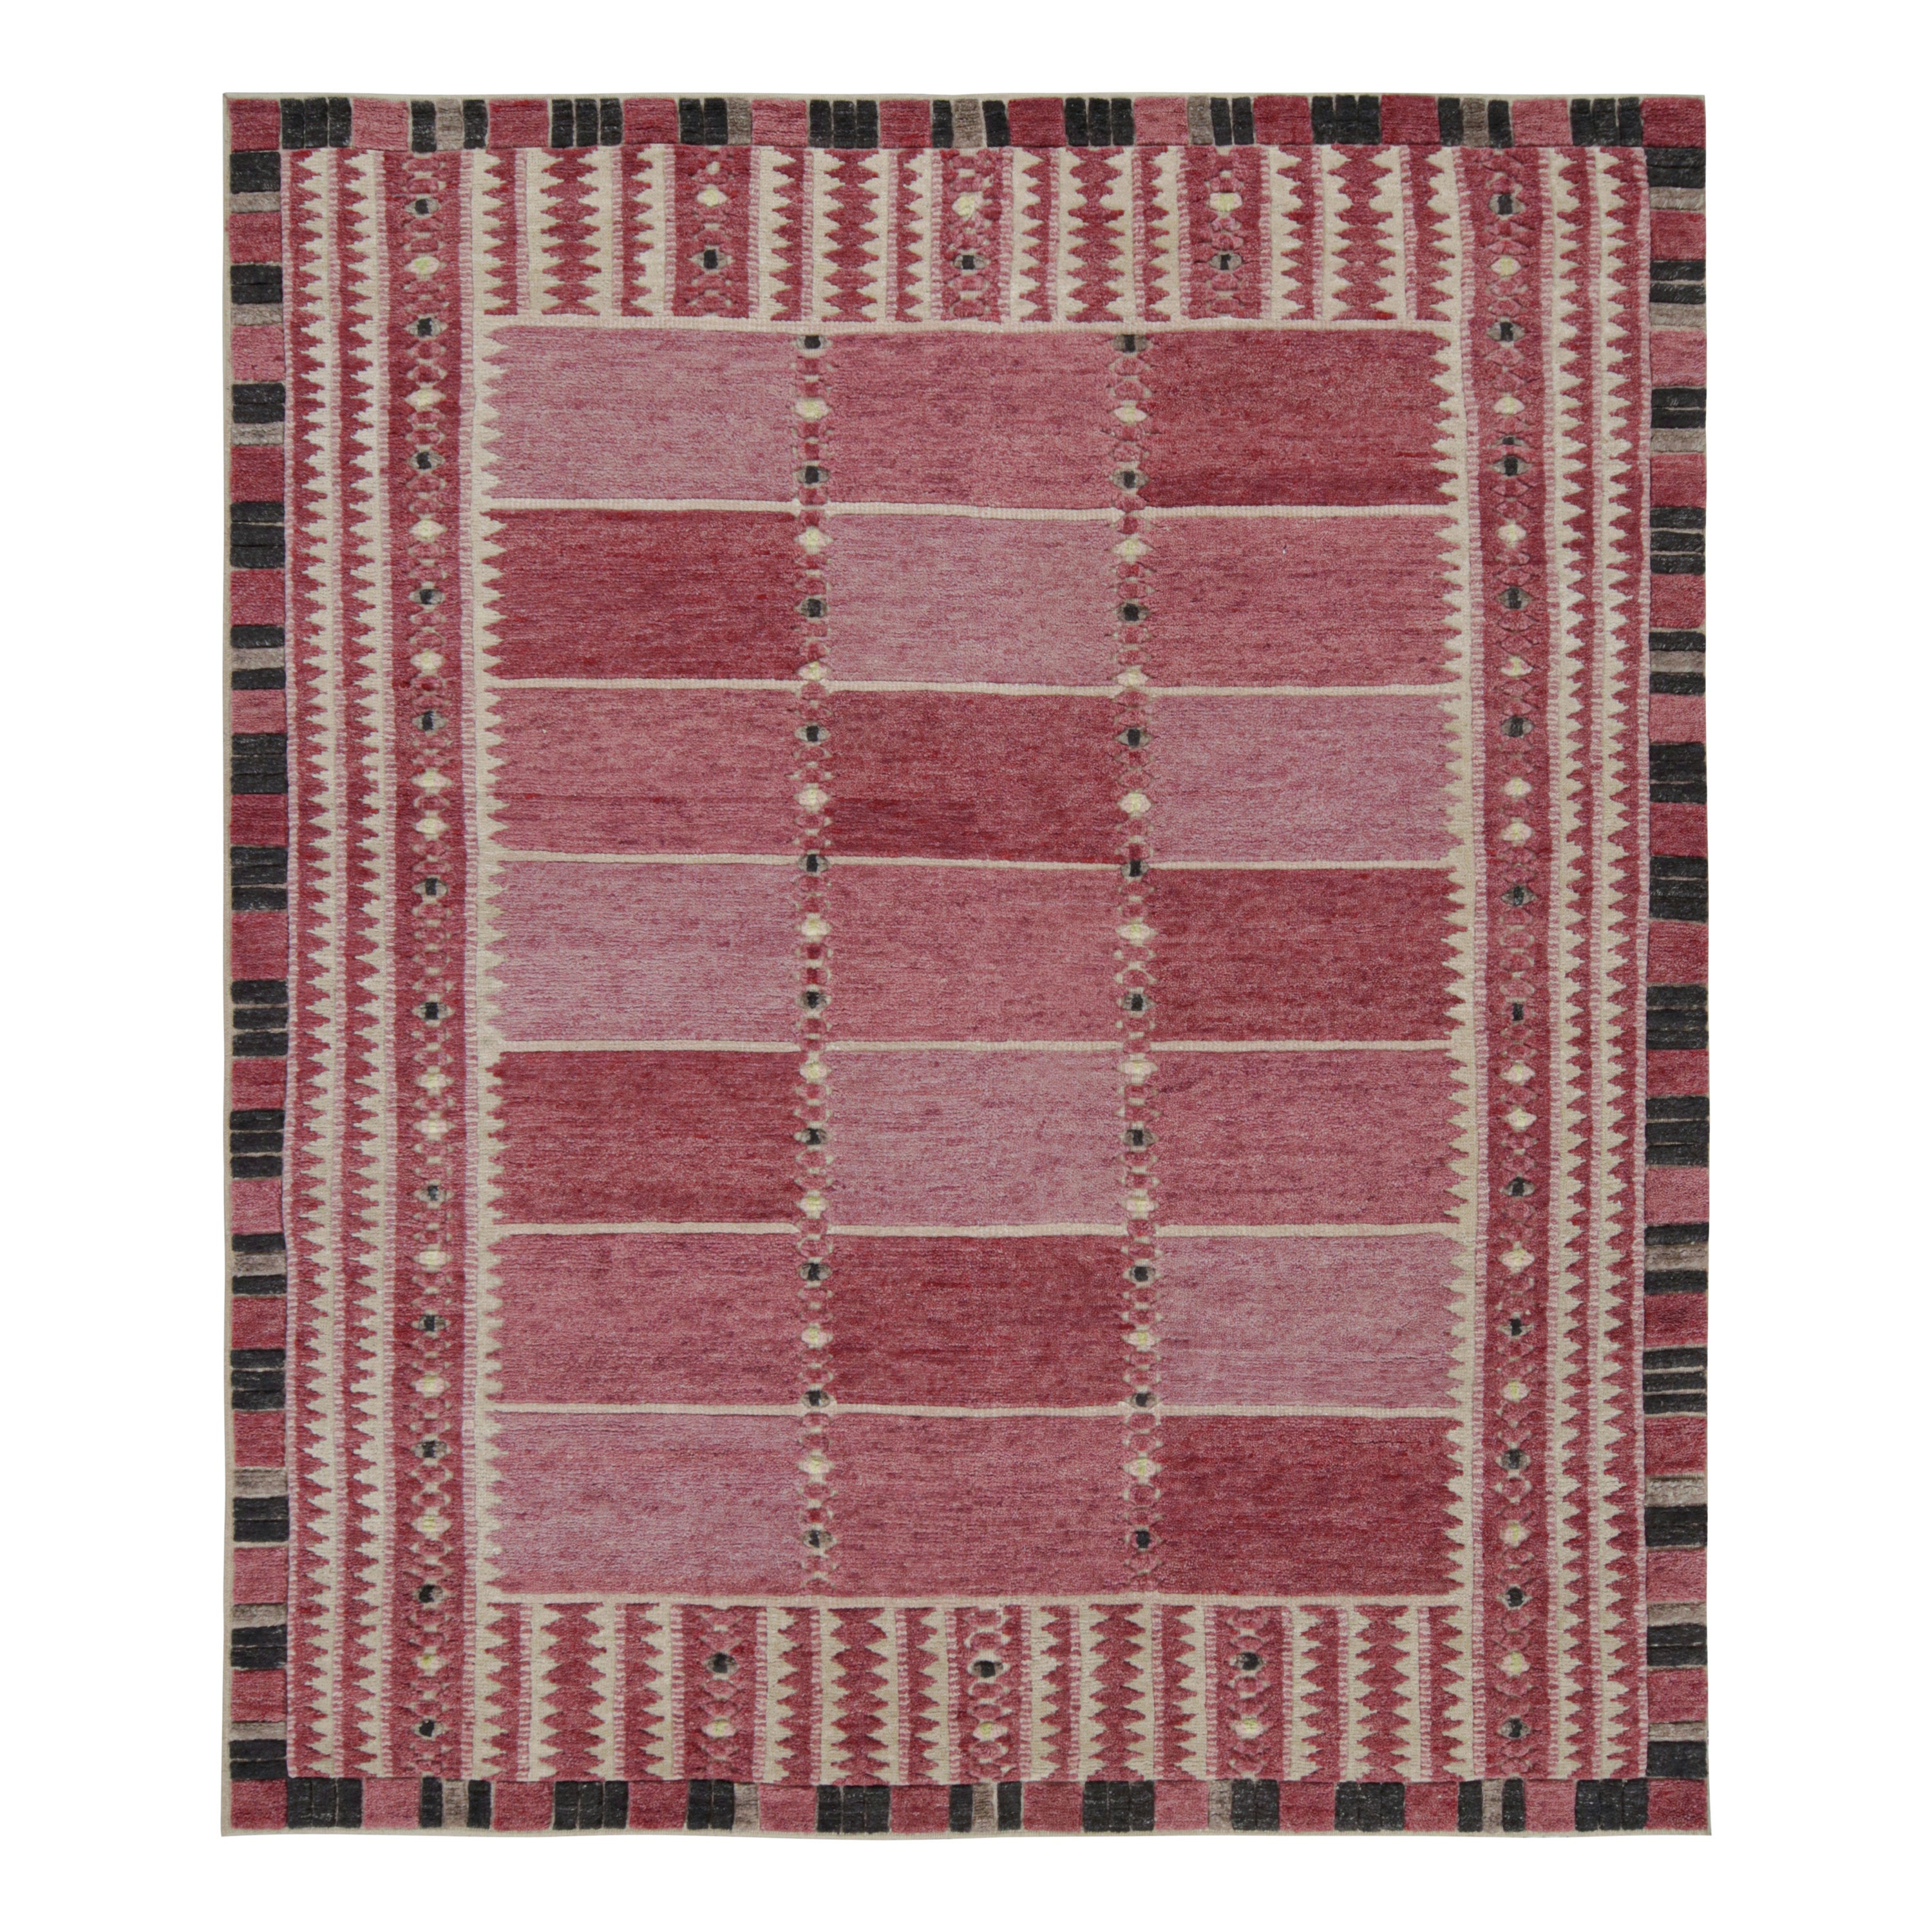 Rug & Kilim's Teppich im skandinavischen Stil mit rosafarbenen, geometrischen Mustern